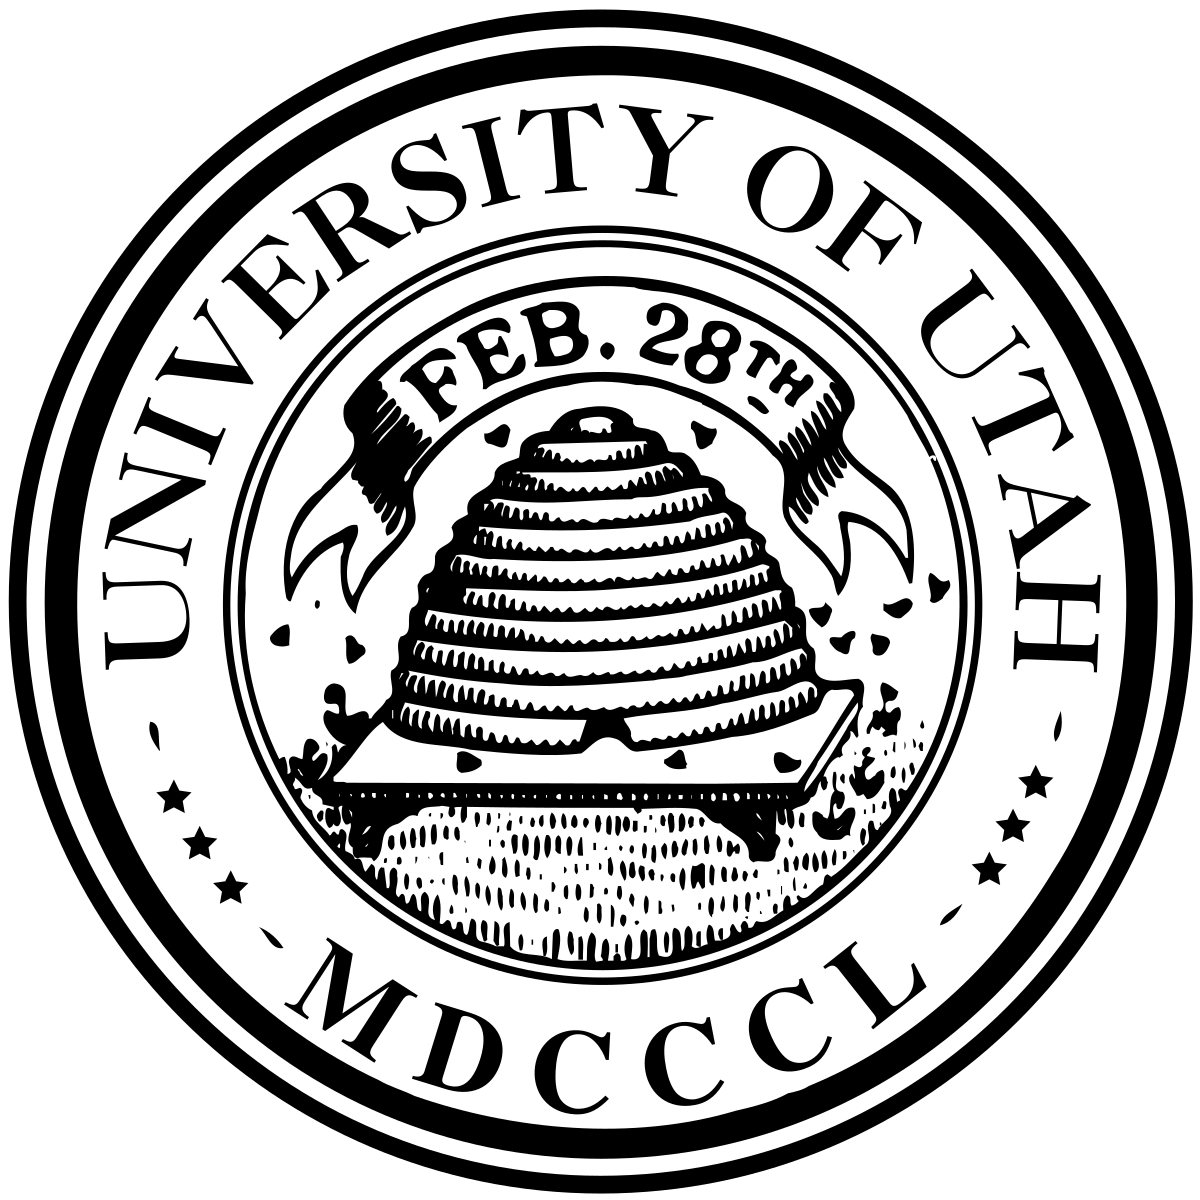 And U of U Mascot Logo - University of Utah